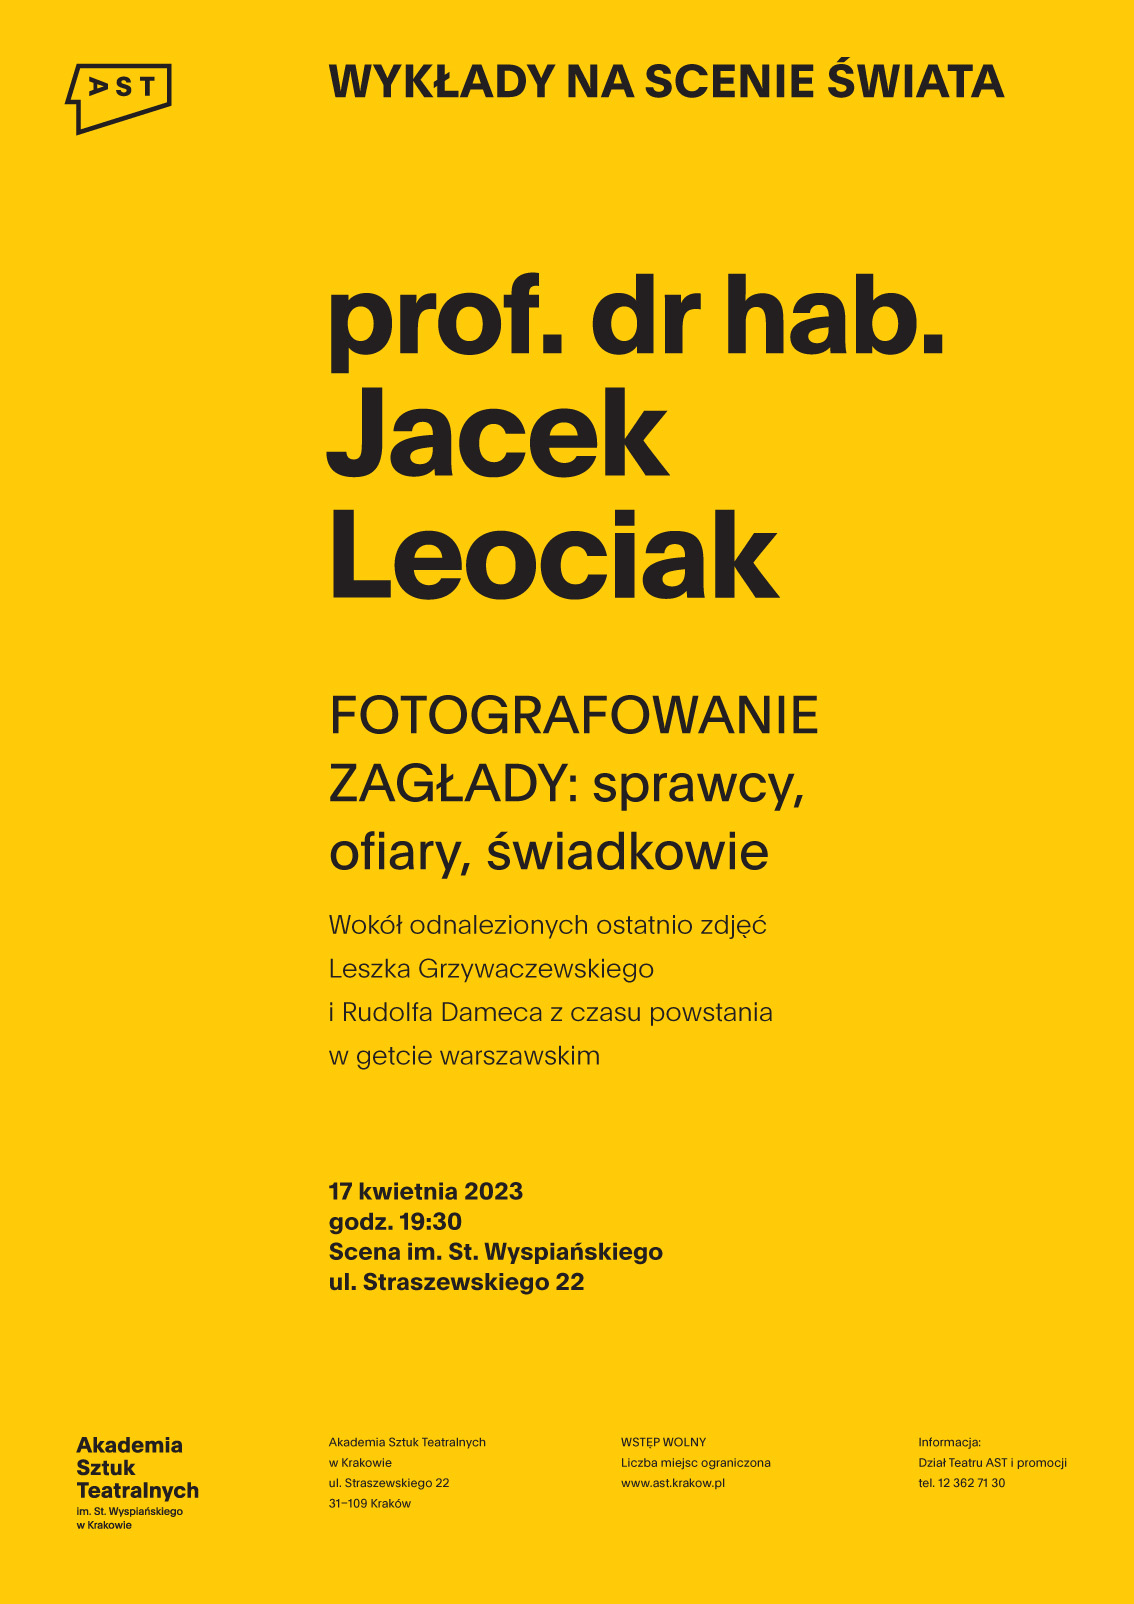 Plakat wydarzenia Wykłady na scenie świata. Na zółtym tle czarne logo Akademii Sztuk Teatralnych w Krakowie oraz napisy informujące o wydarzeniu.